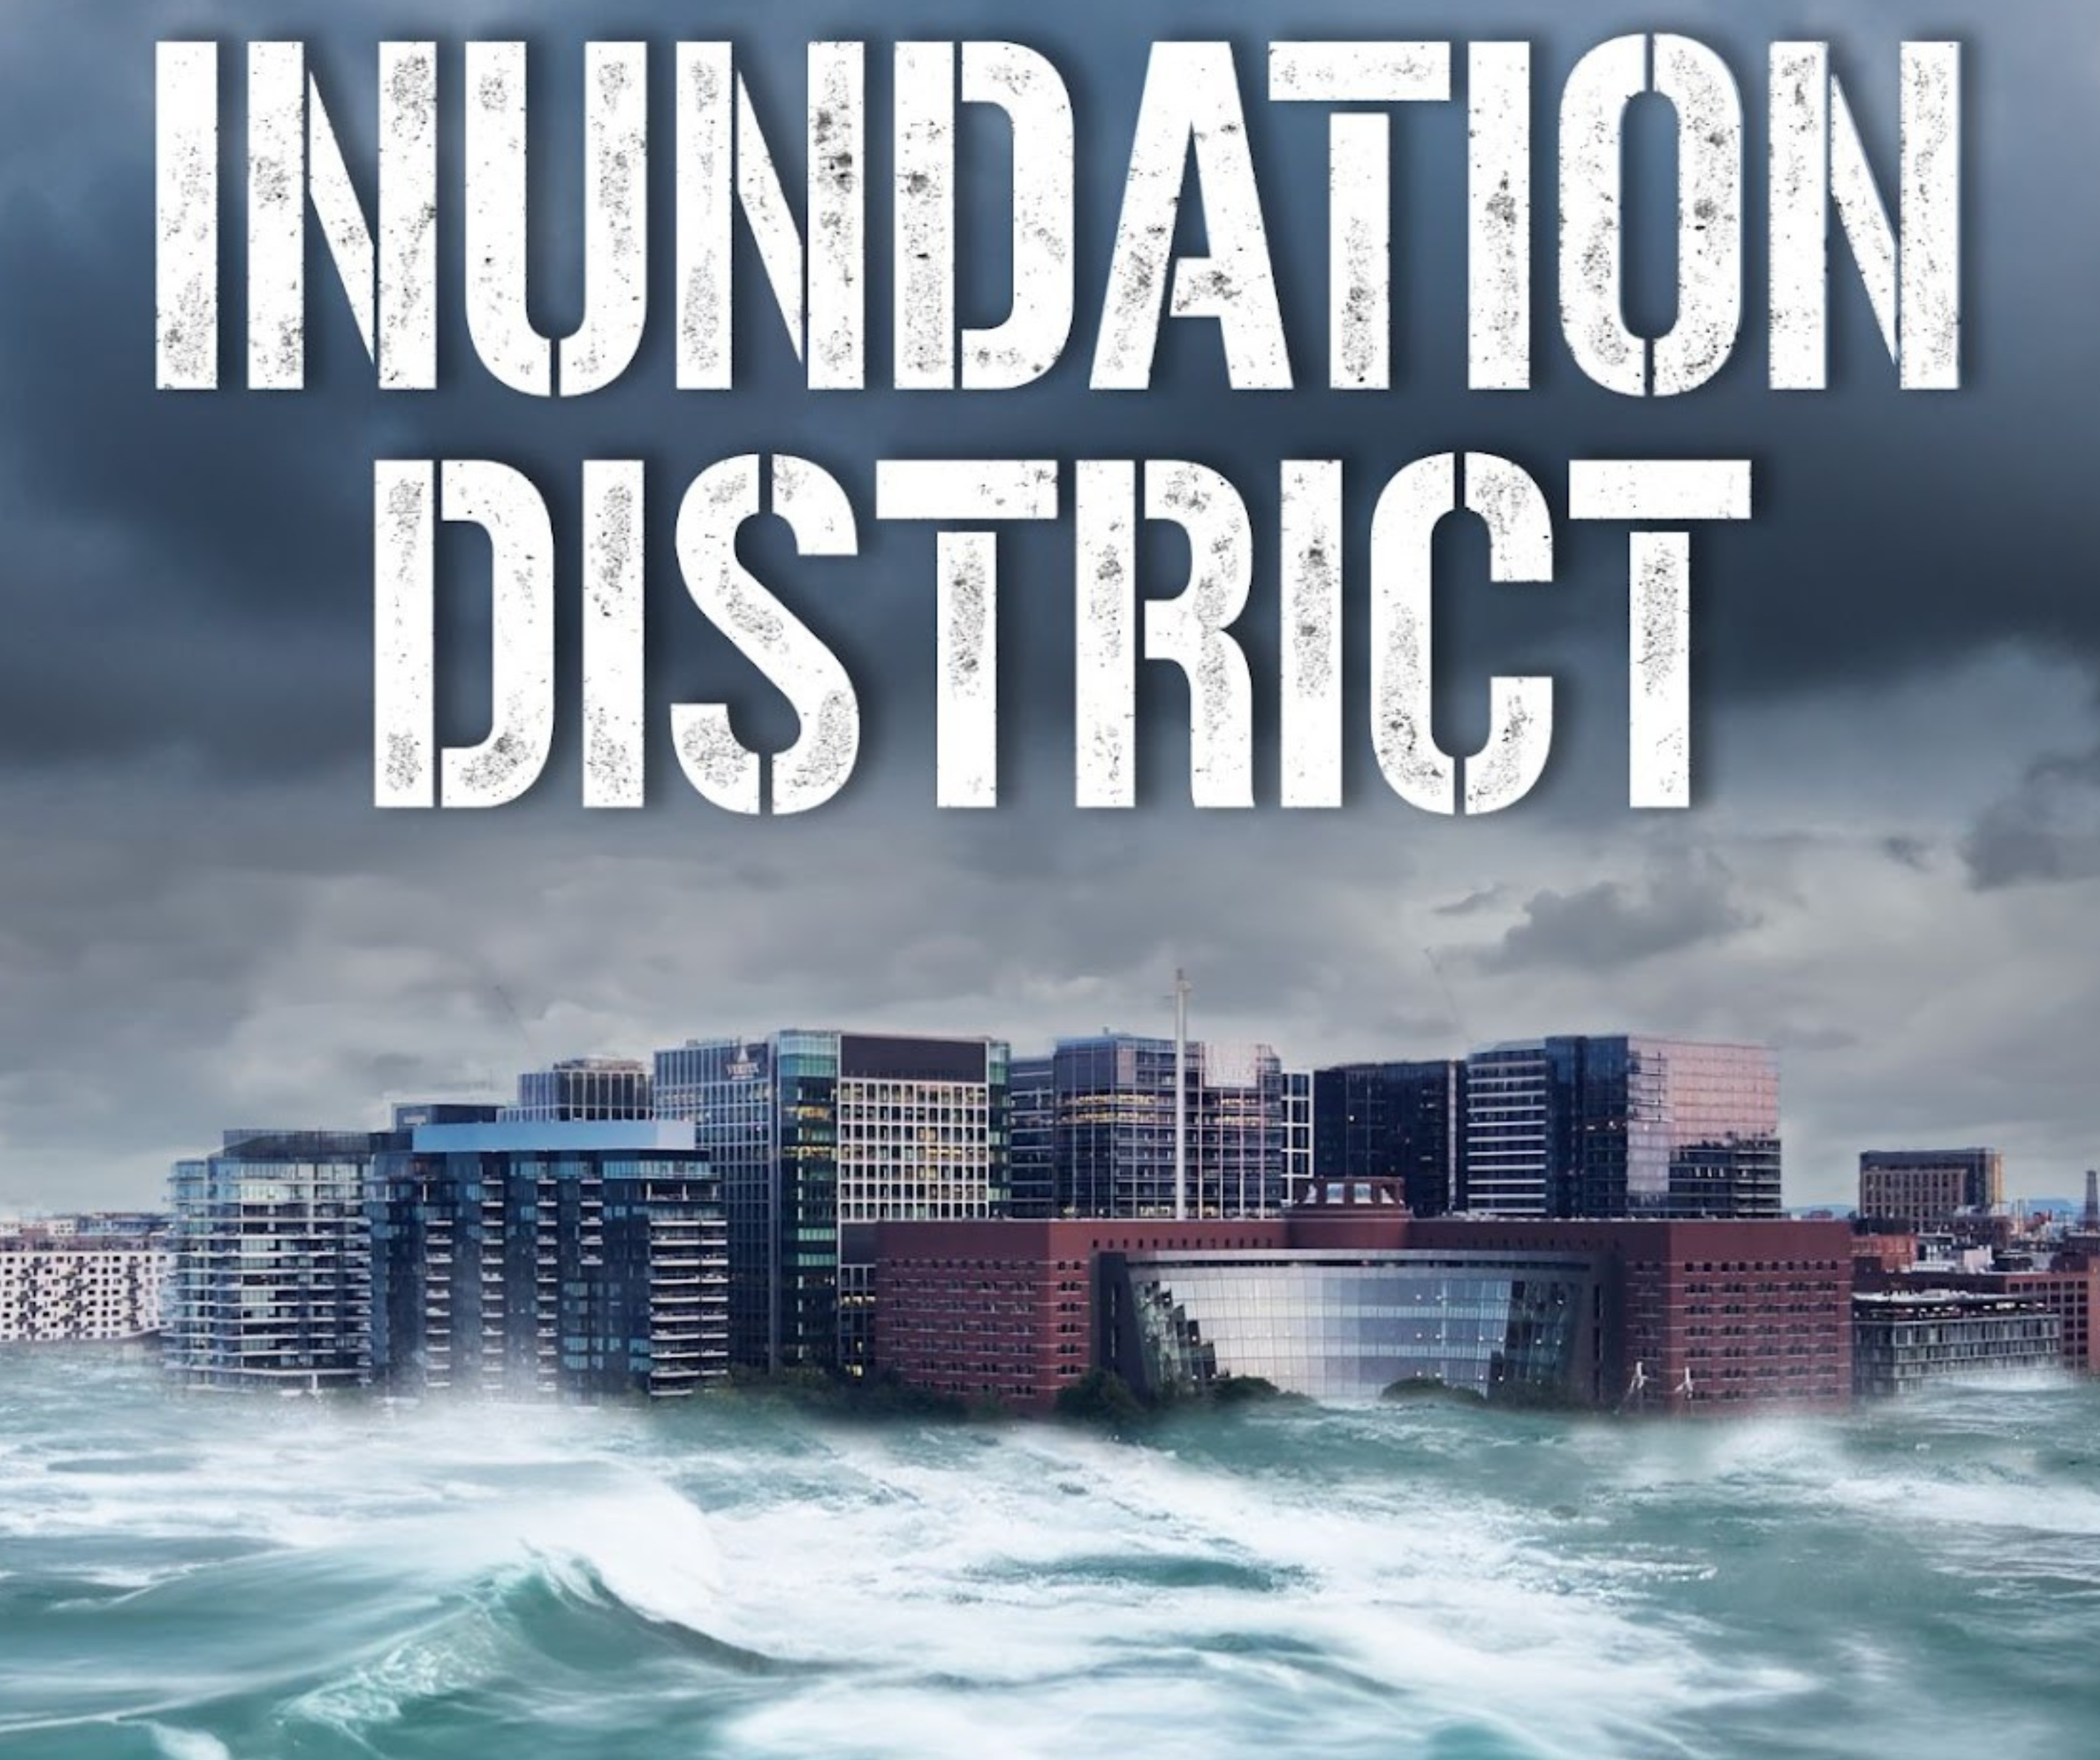 Inundation District